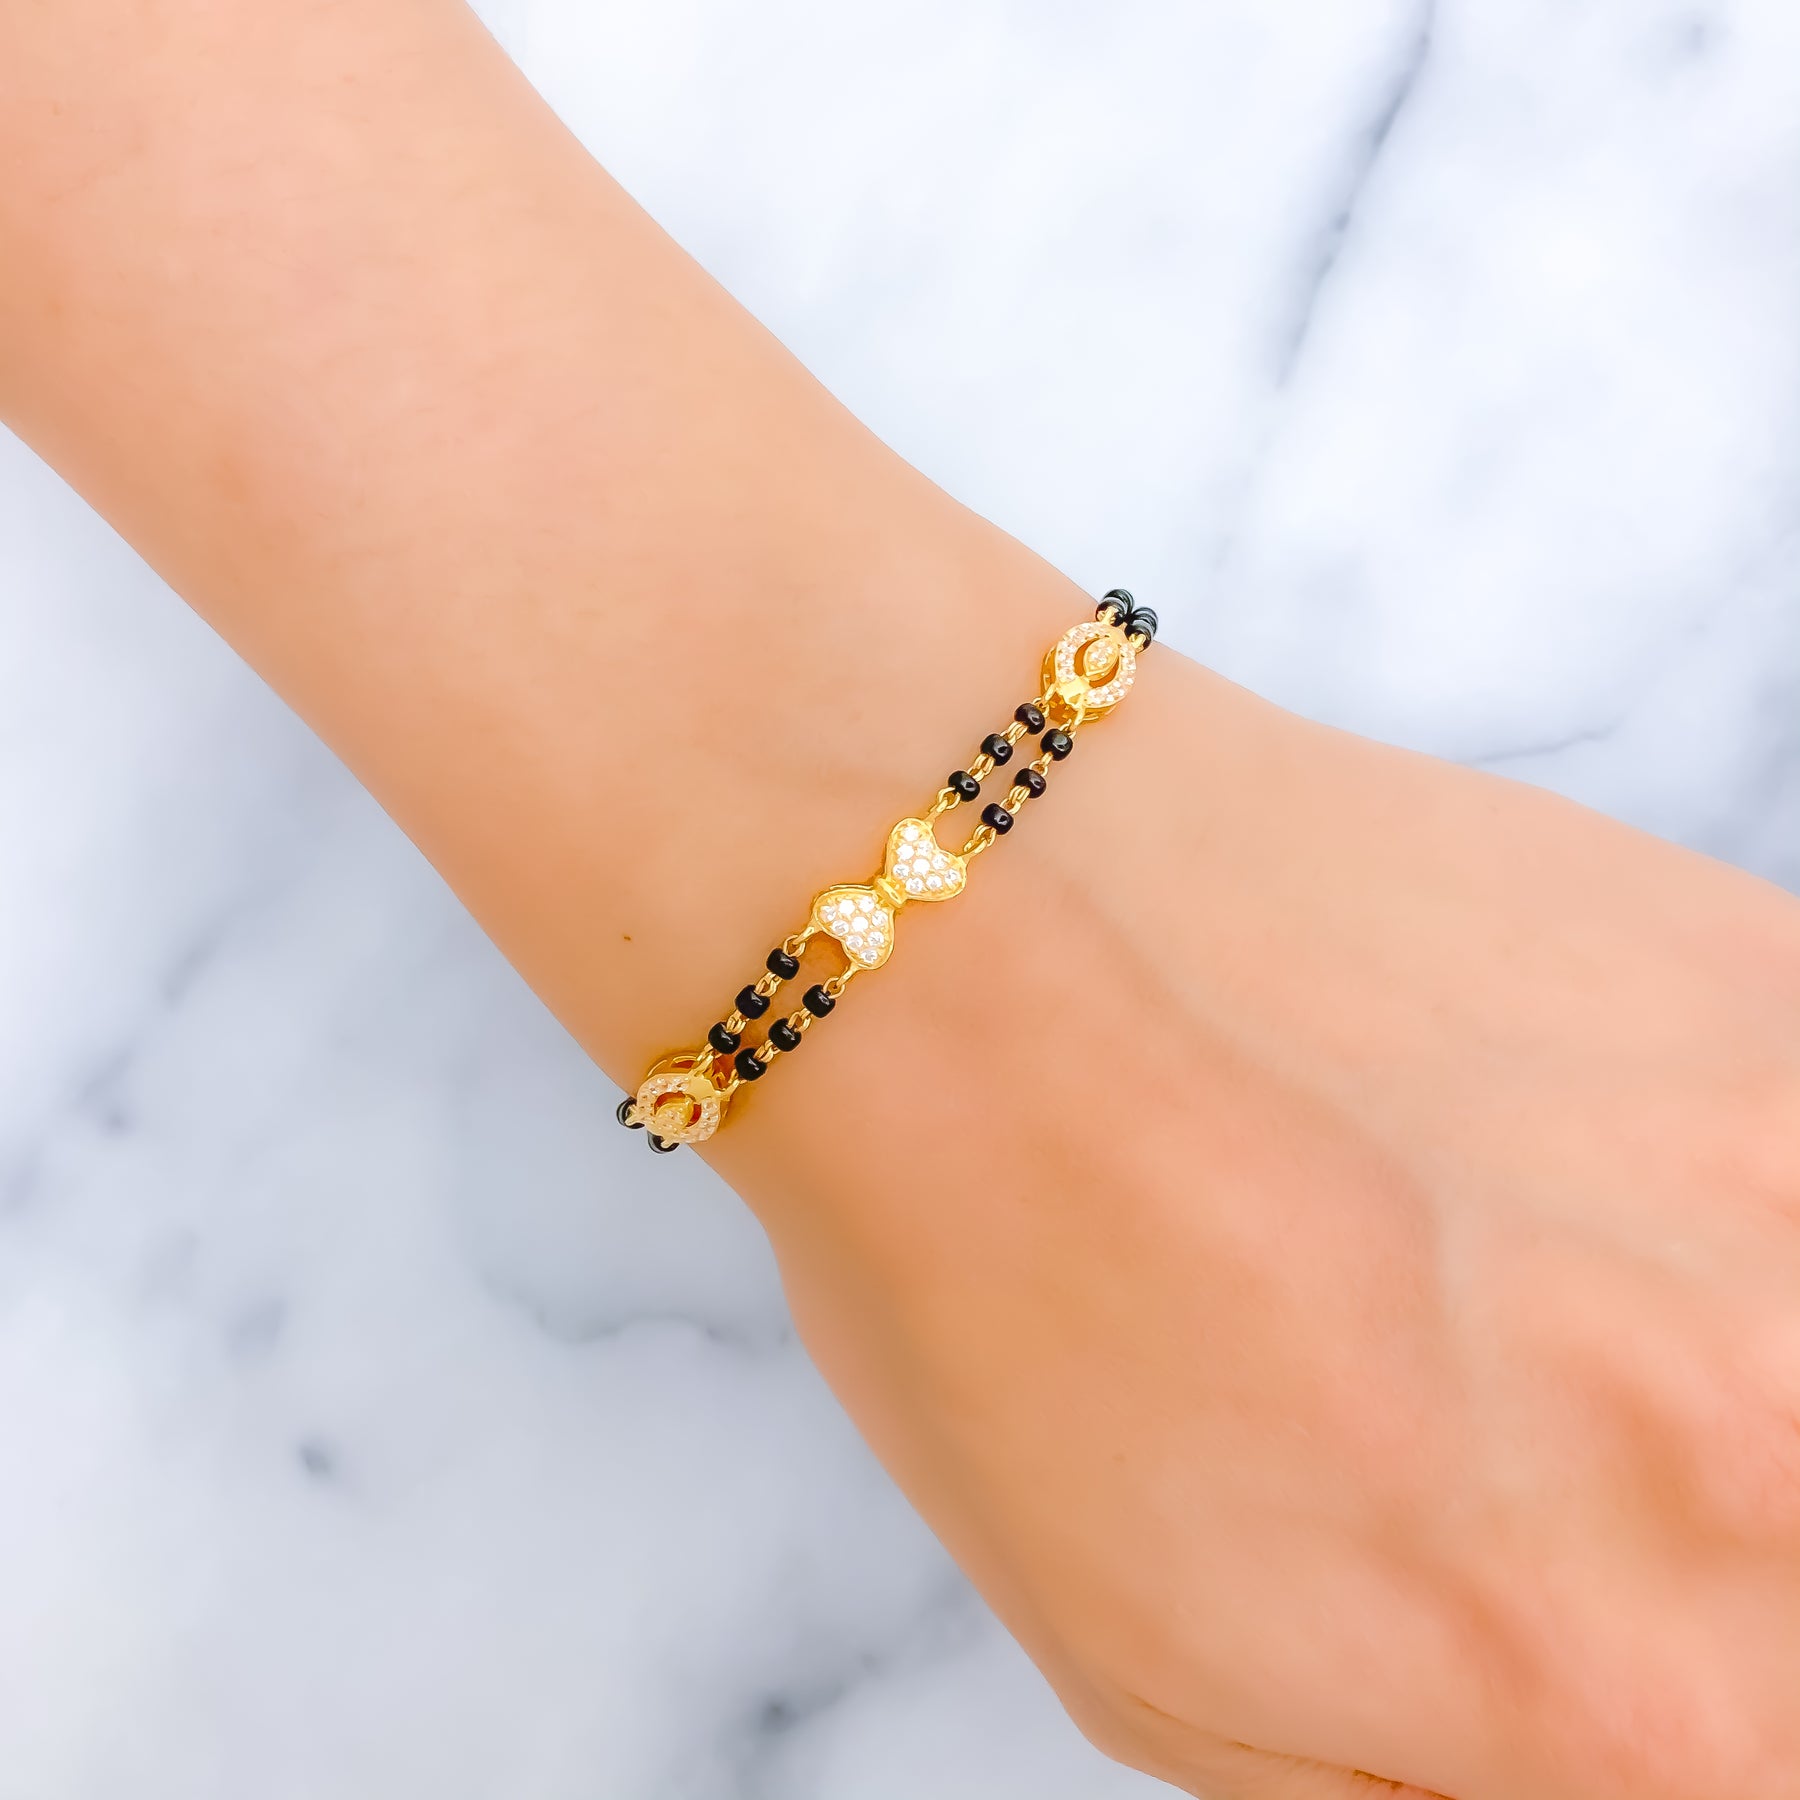 22k Gold Black Beads Bracelets